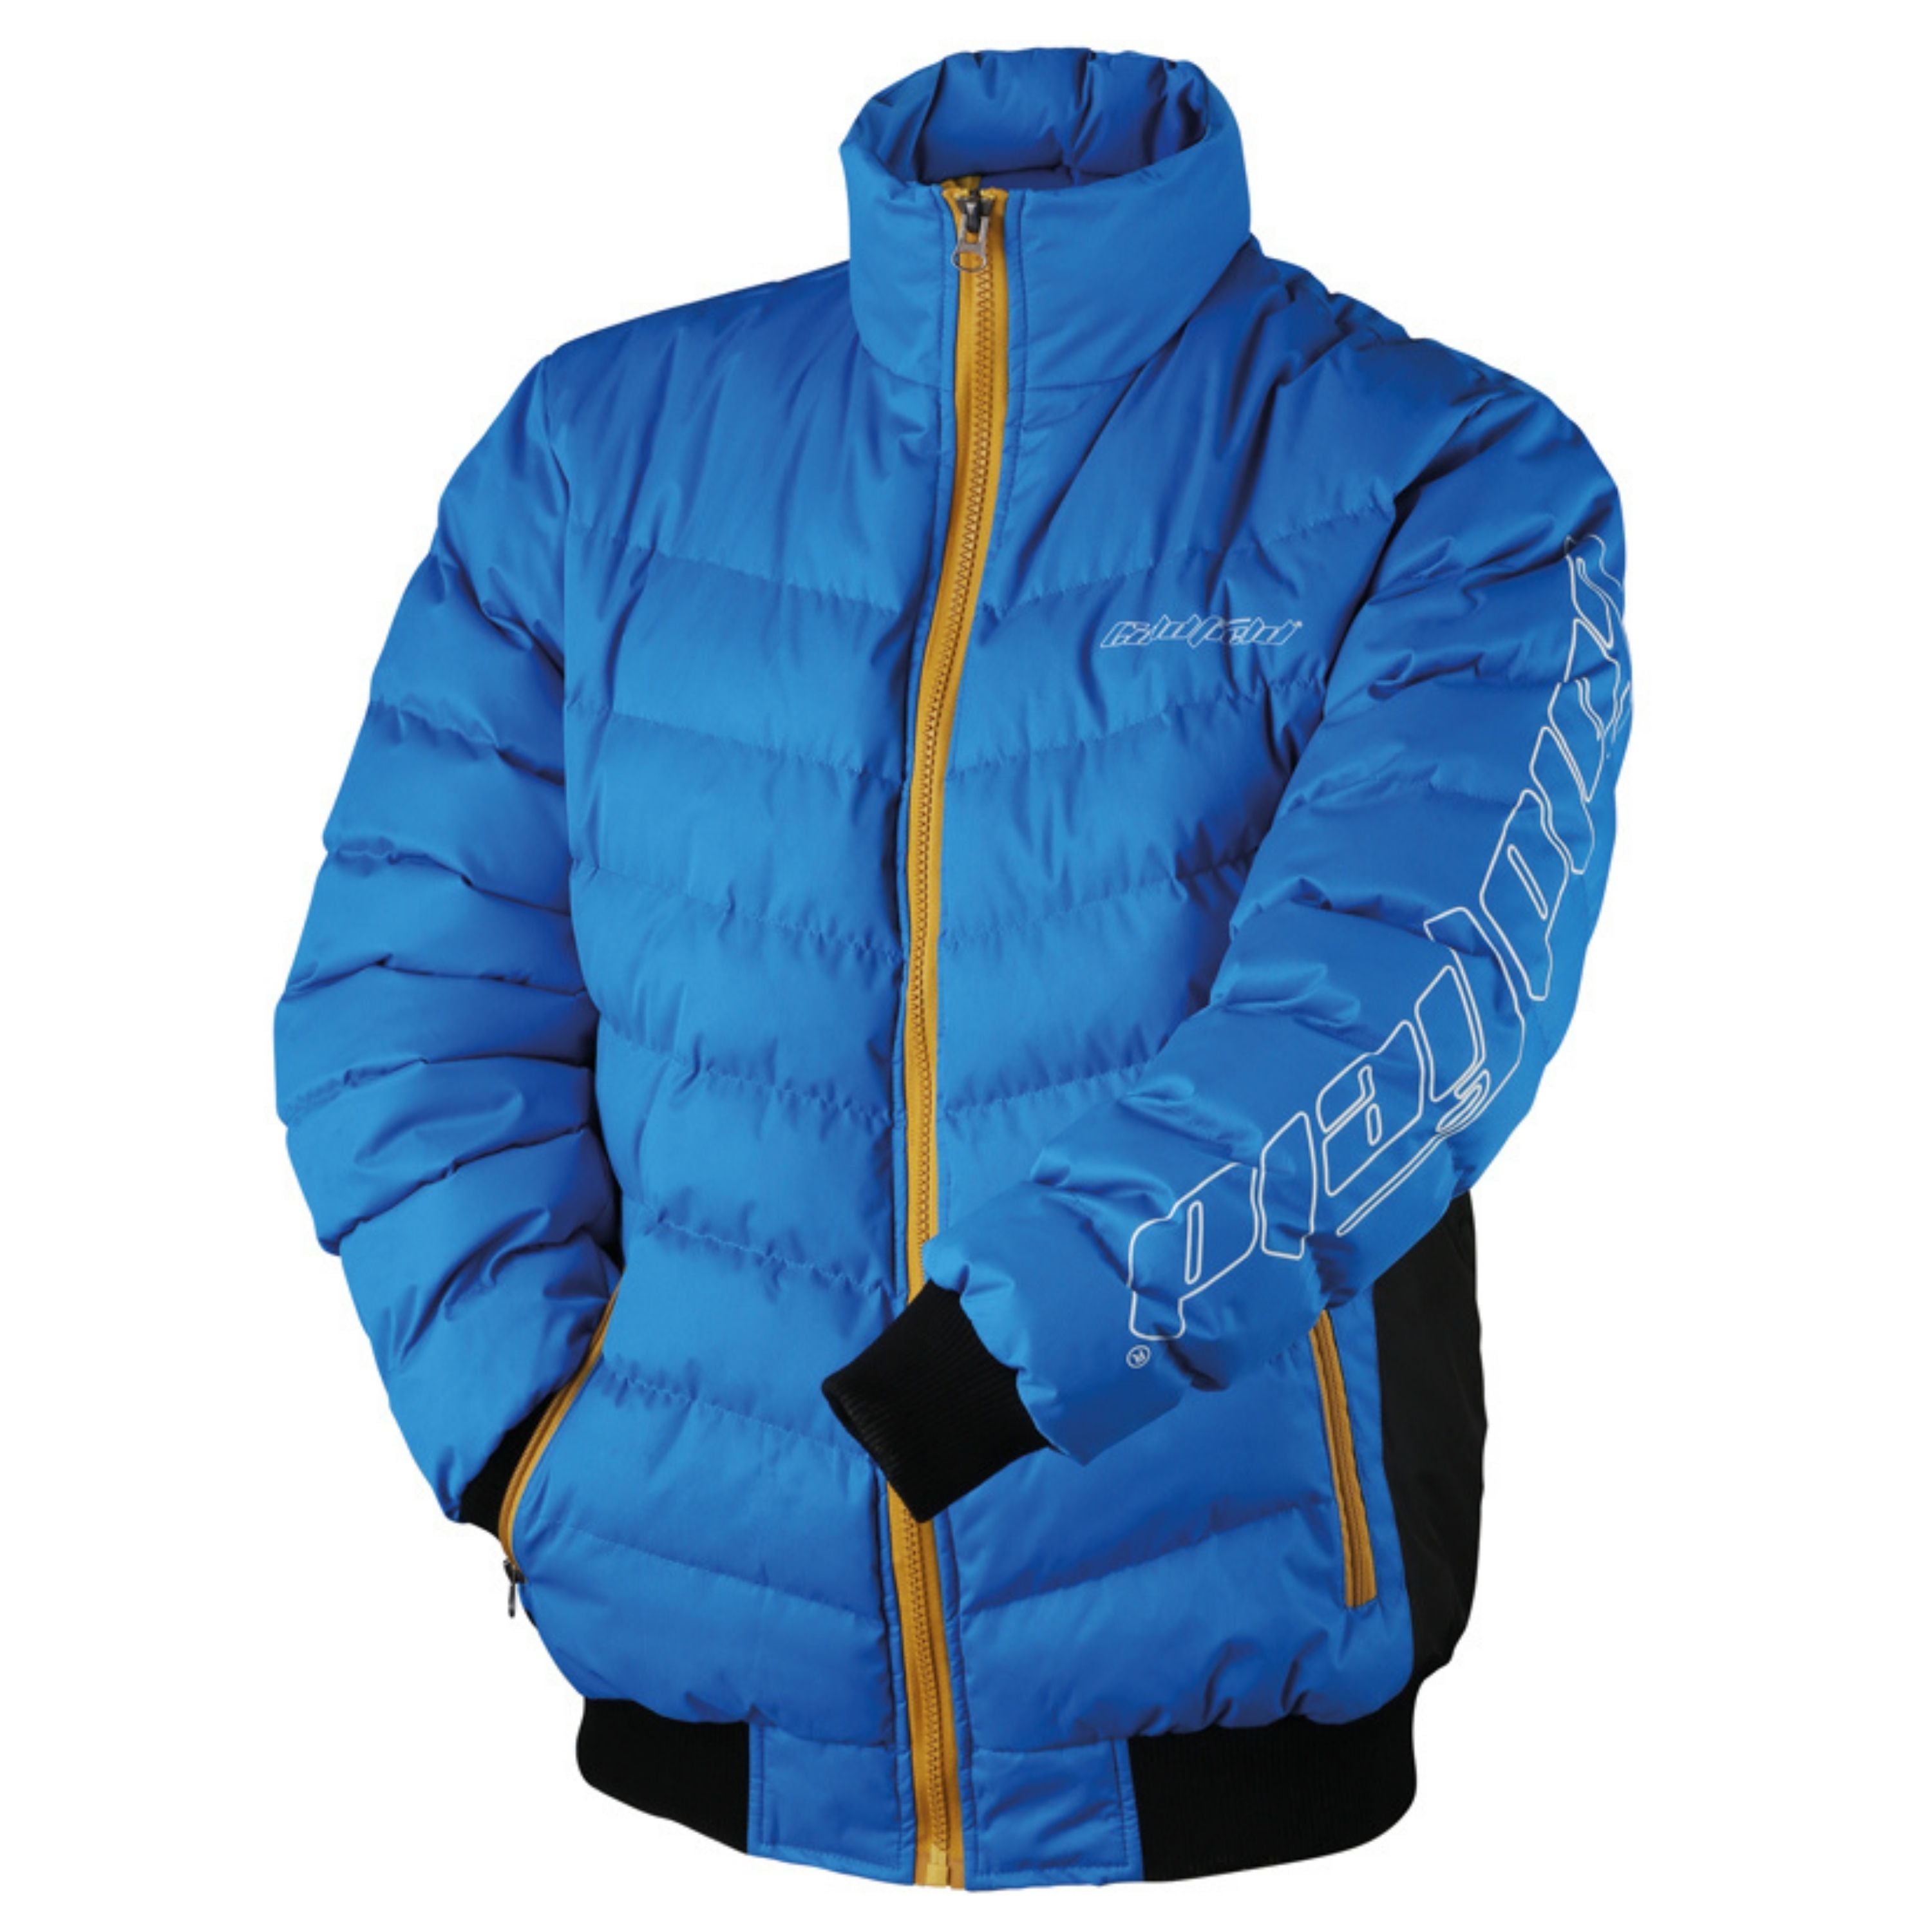 Manteau isolé "Blizzard" - Homme||"Blizzard" insulated jacket - Men’s